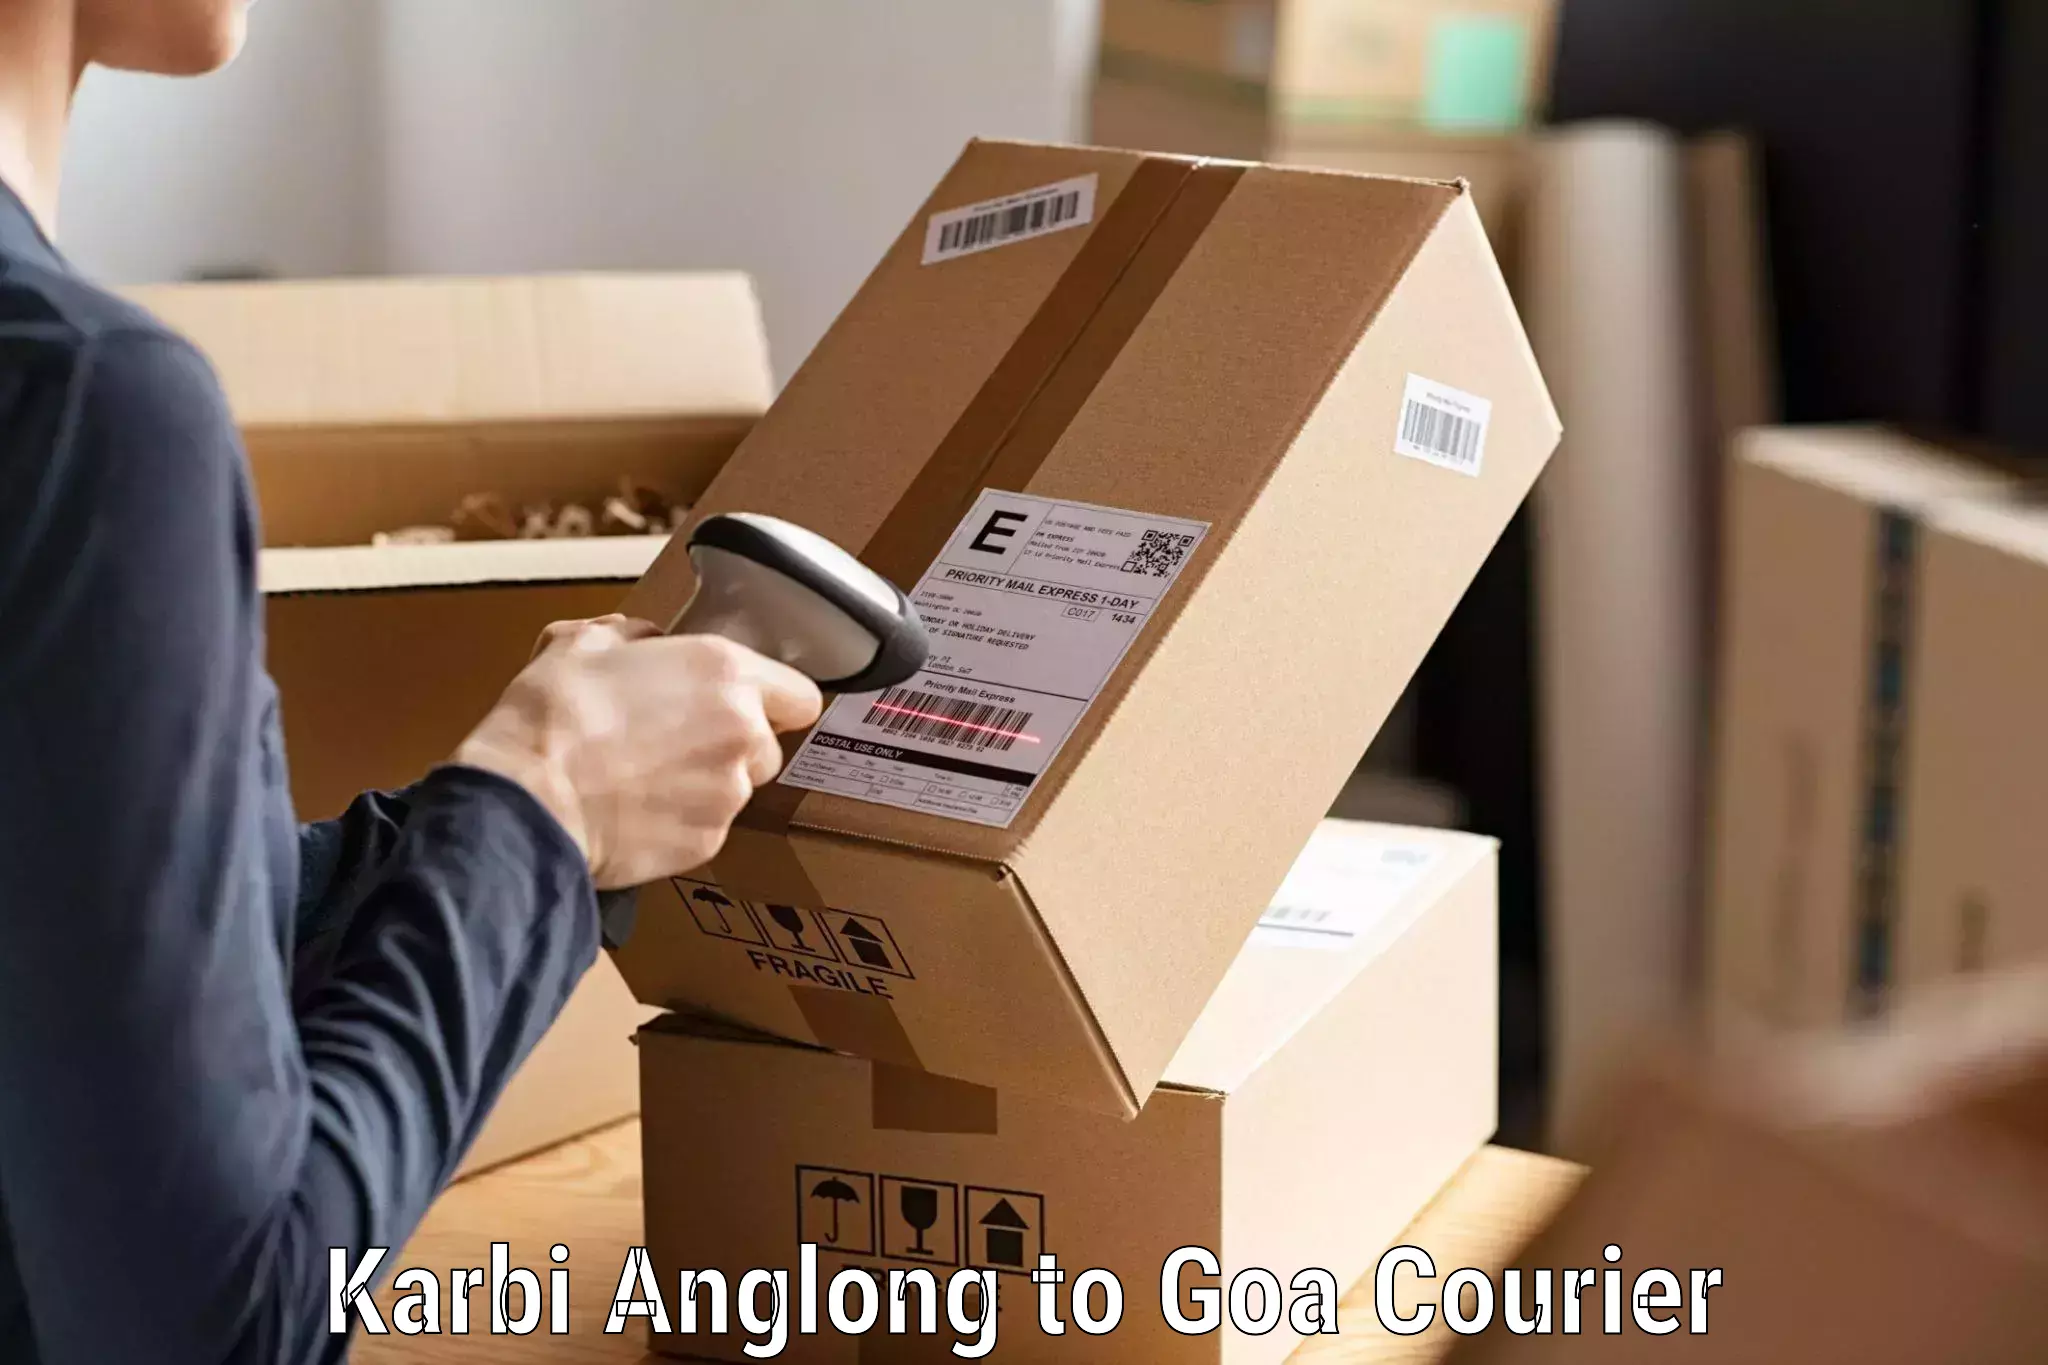 Same-day delivery solutions Karbi Anglong to Mormugao Port